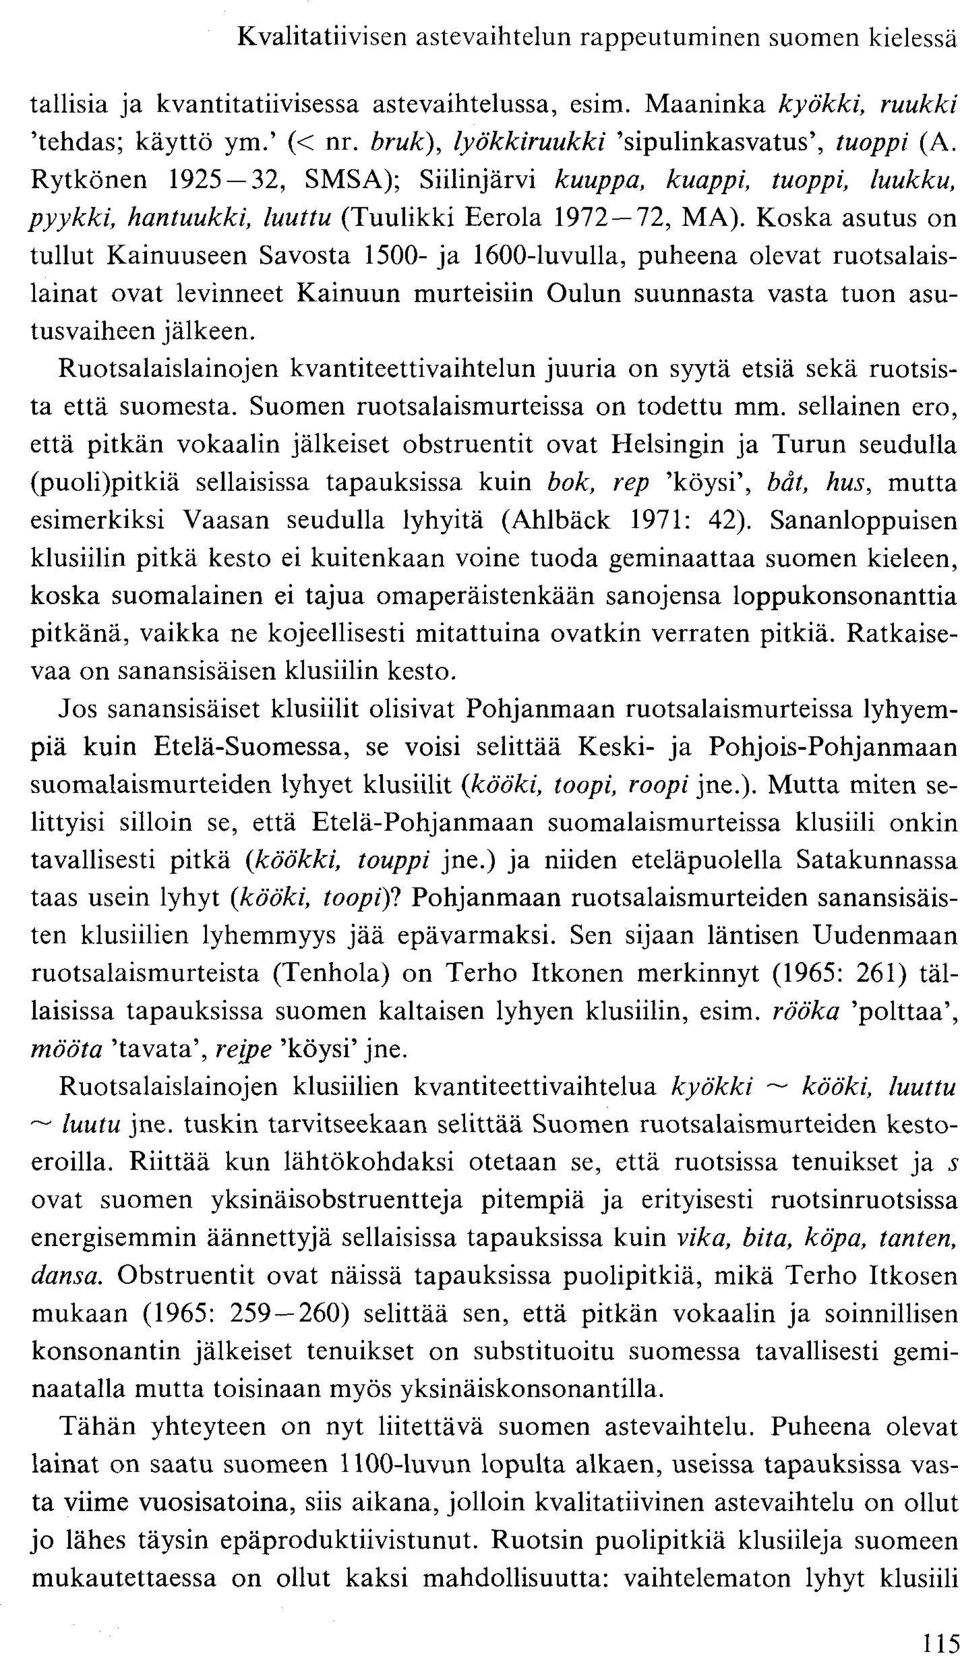 Koska asutus on tullut Kainuuseen Savosta 1500- ja 1600-luvulla, puheena olevat ruotsalaislainat ovat levinneet Kainuun murteisiin Oulun suunnasta vasta tuon asutusvaiheen jälkeen.